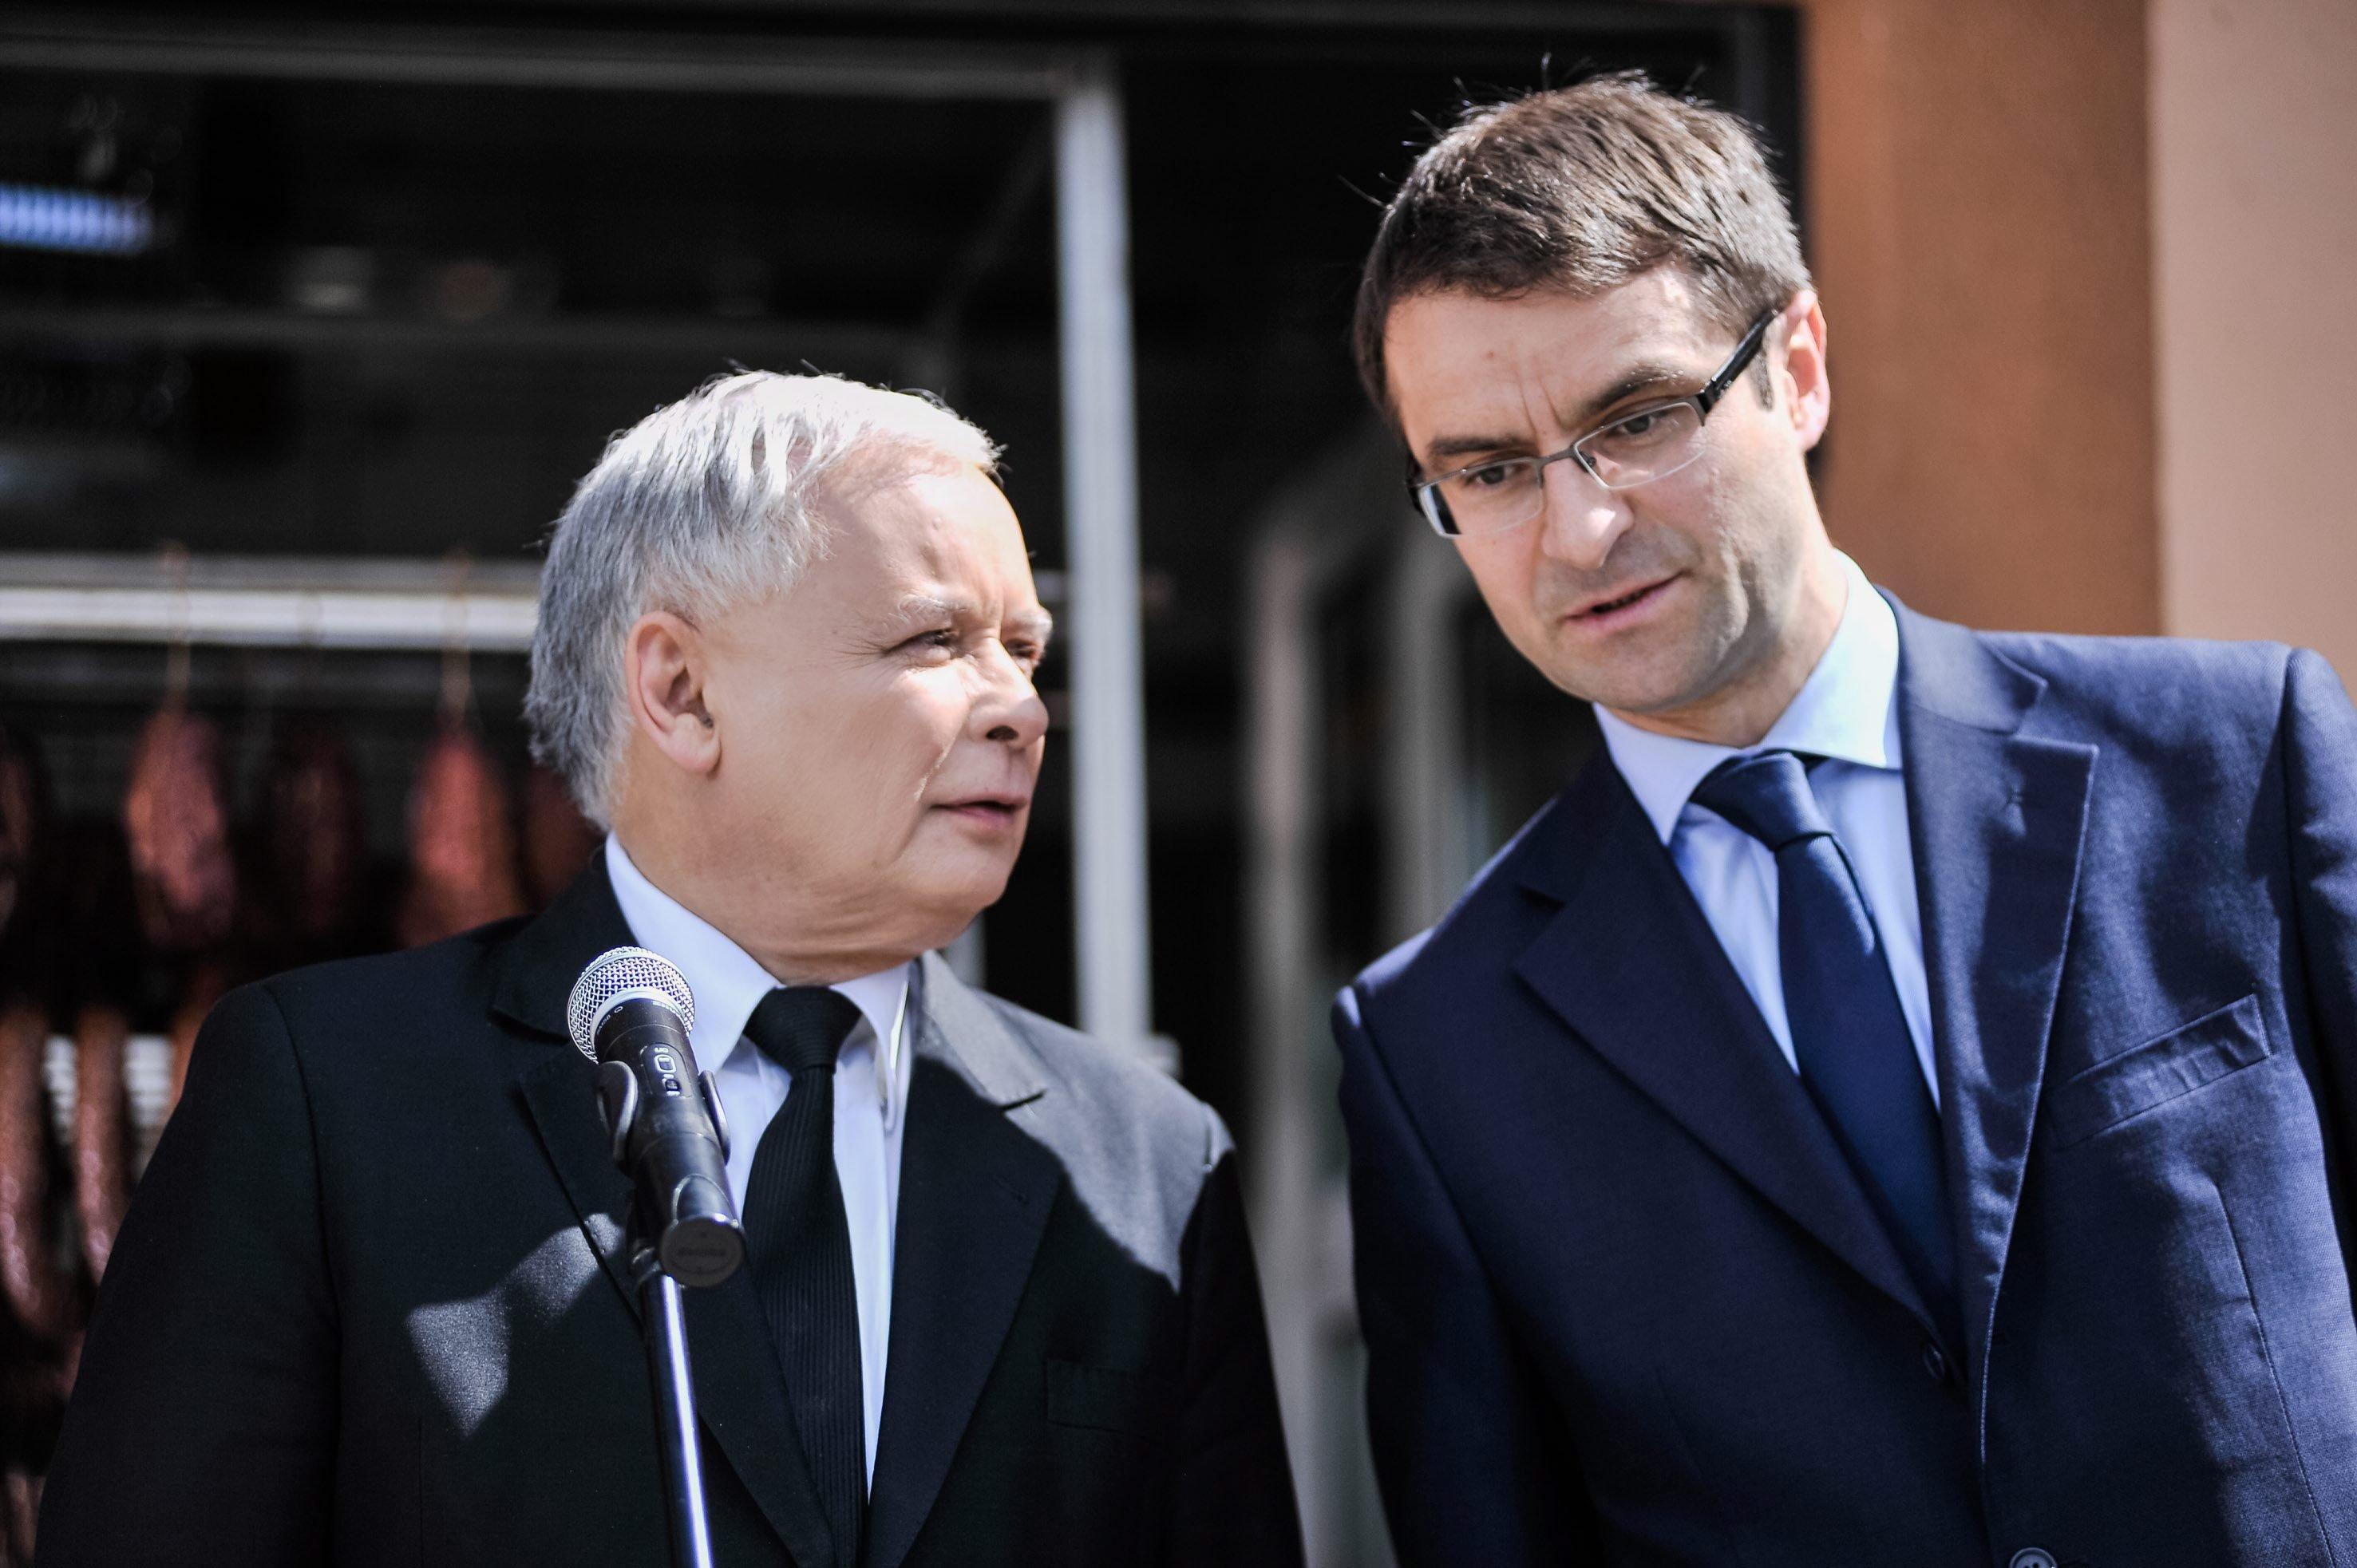 Młodszy wyższy mężczyzna (Tomasz Poręba - z prawej) pochyla się ku starszemu i niższemu (Jarosław Kaczyński z lewej)